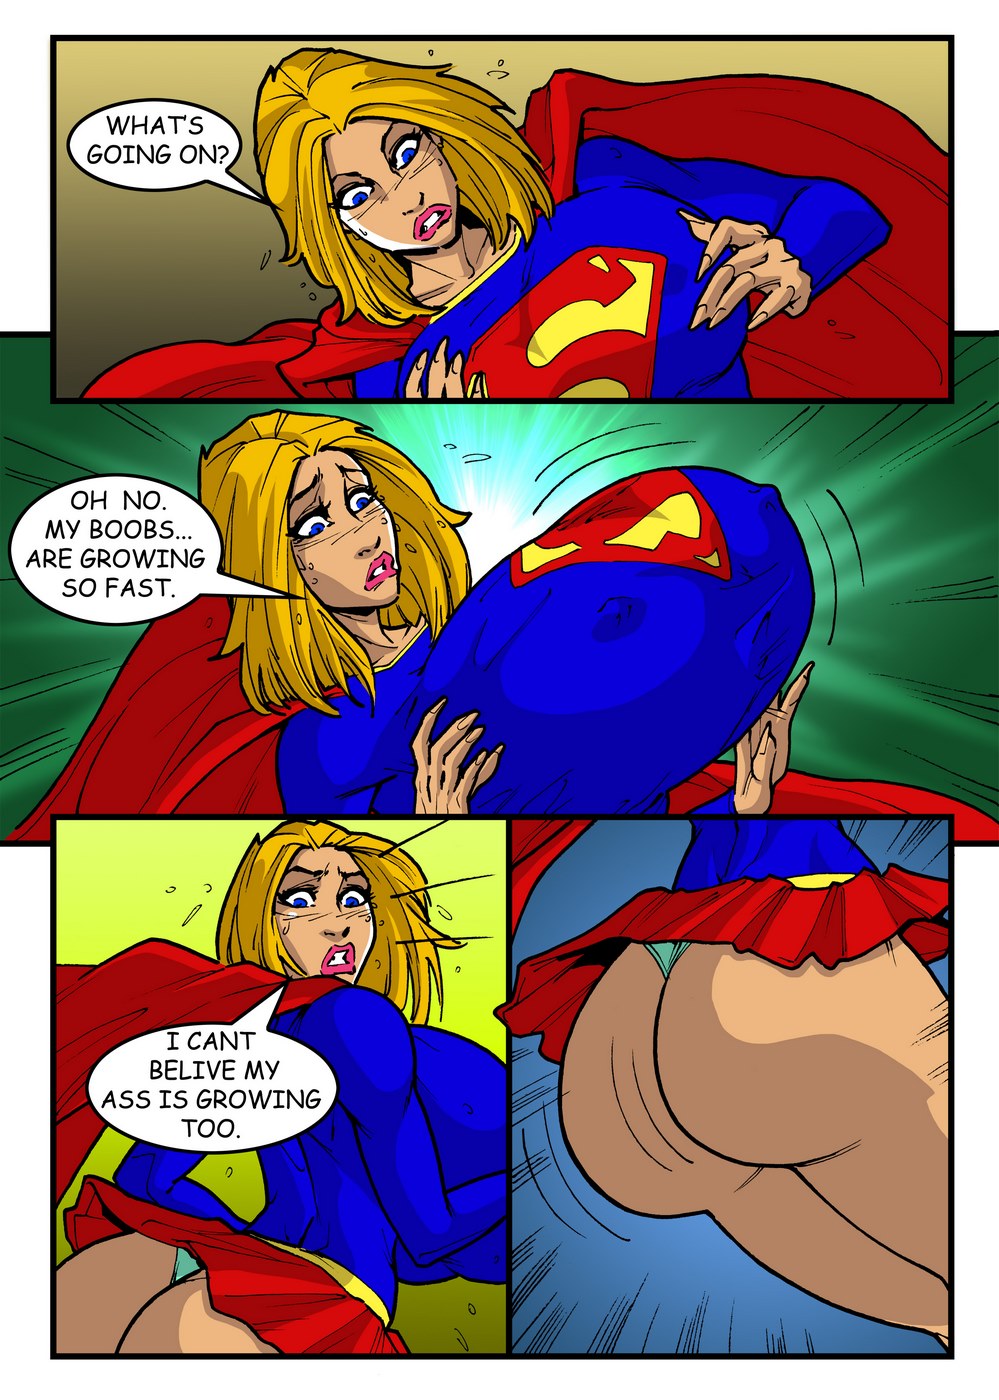 999px x 1400px - SuperGirl's Super Boobs - Porn Cartoon Comics